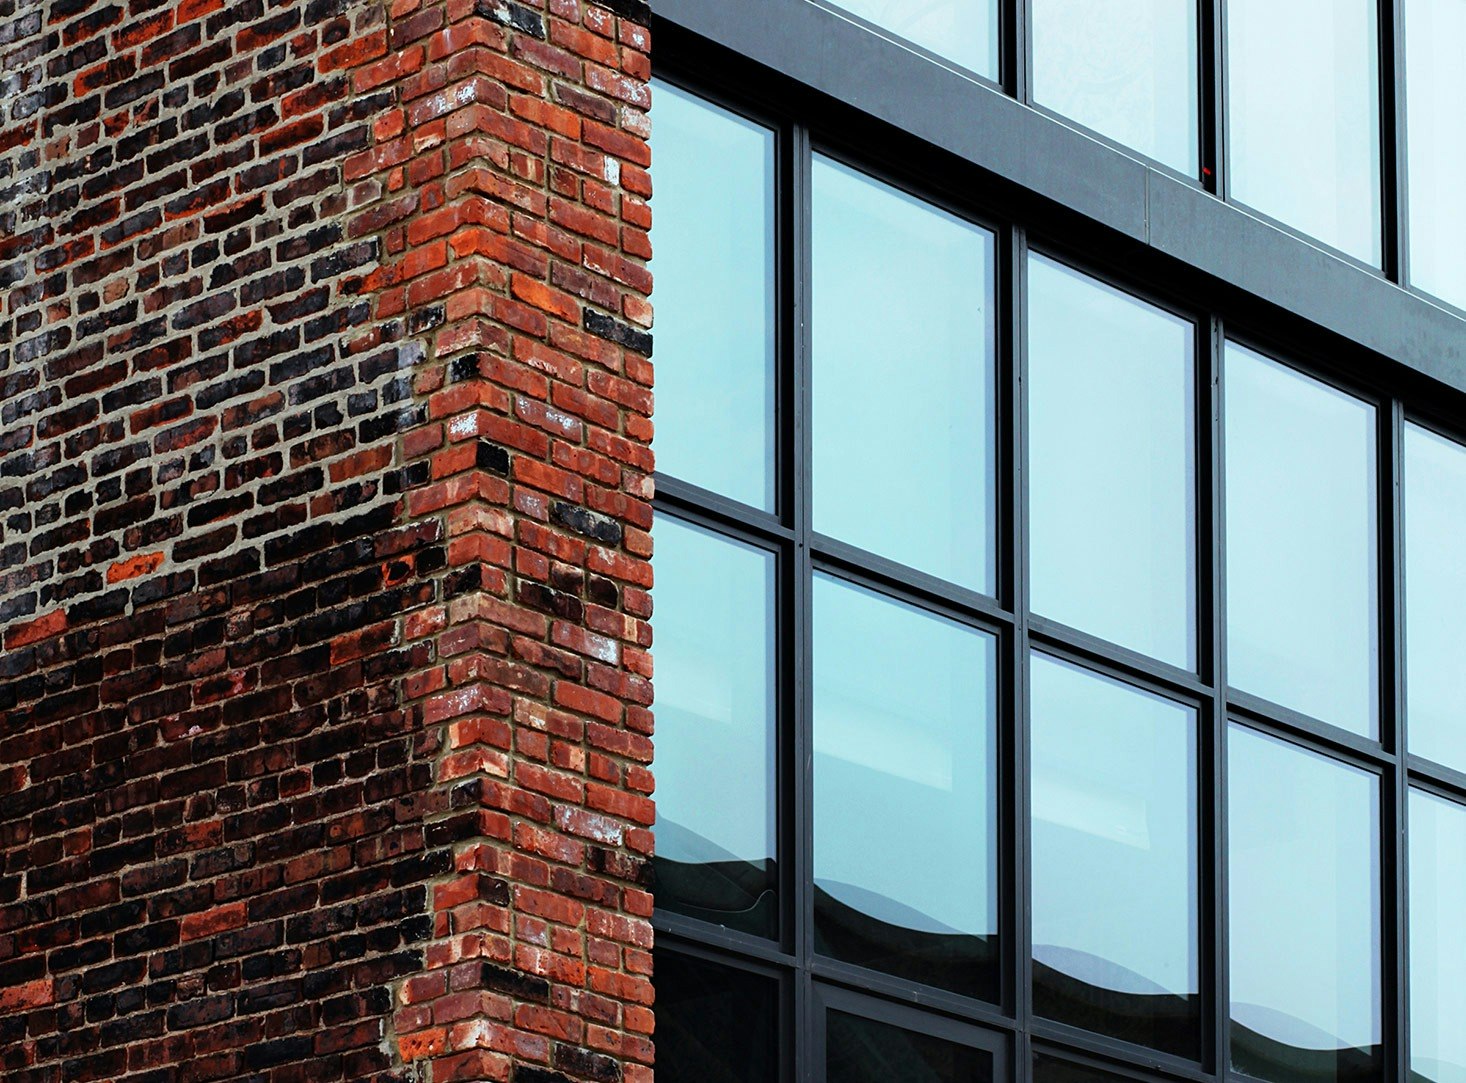 Brick Façade and Windows